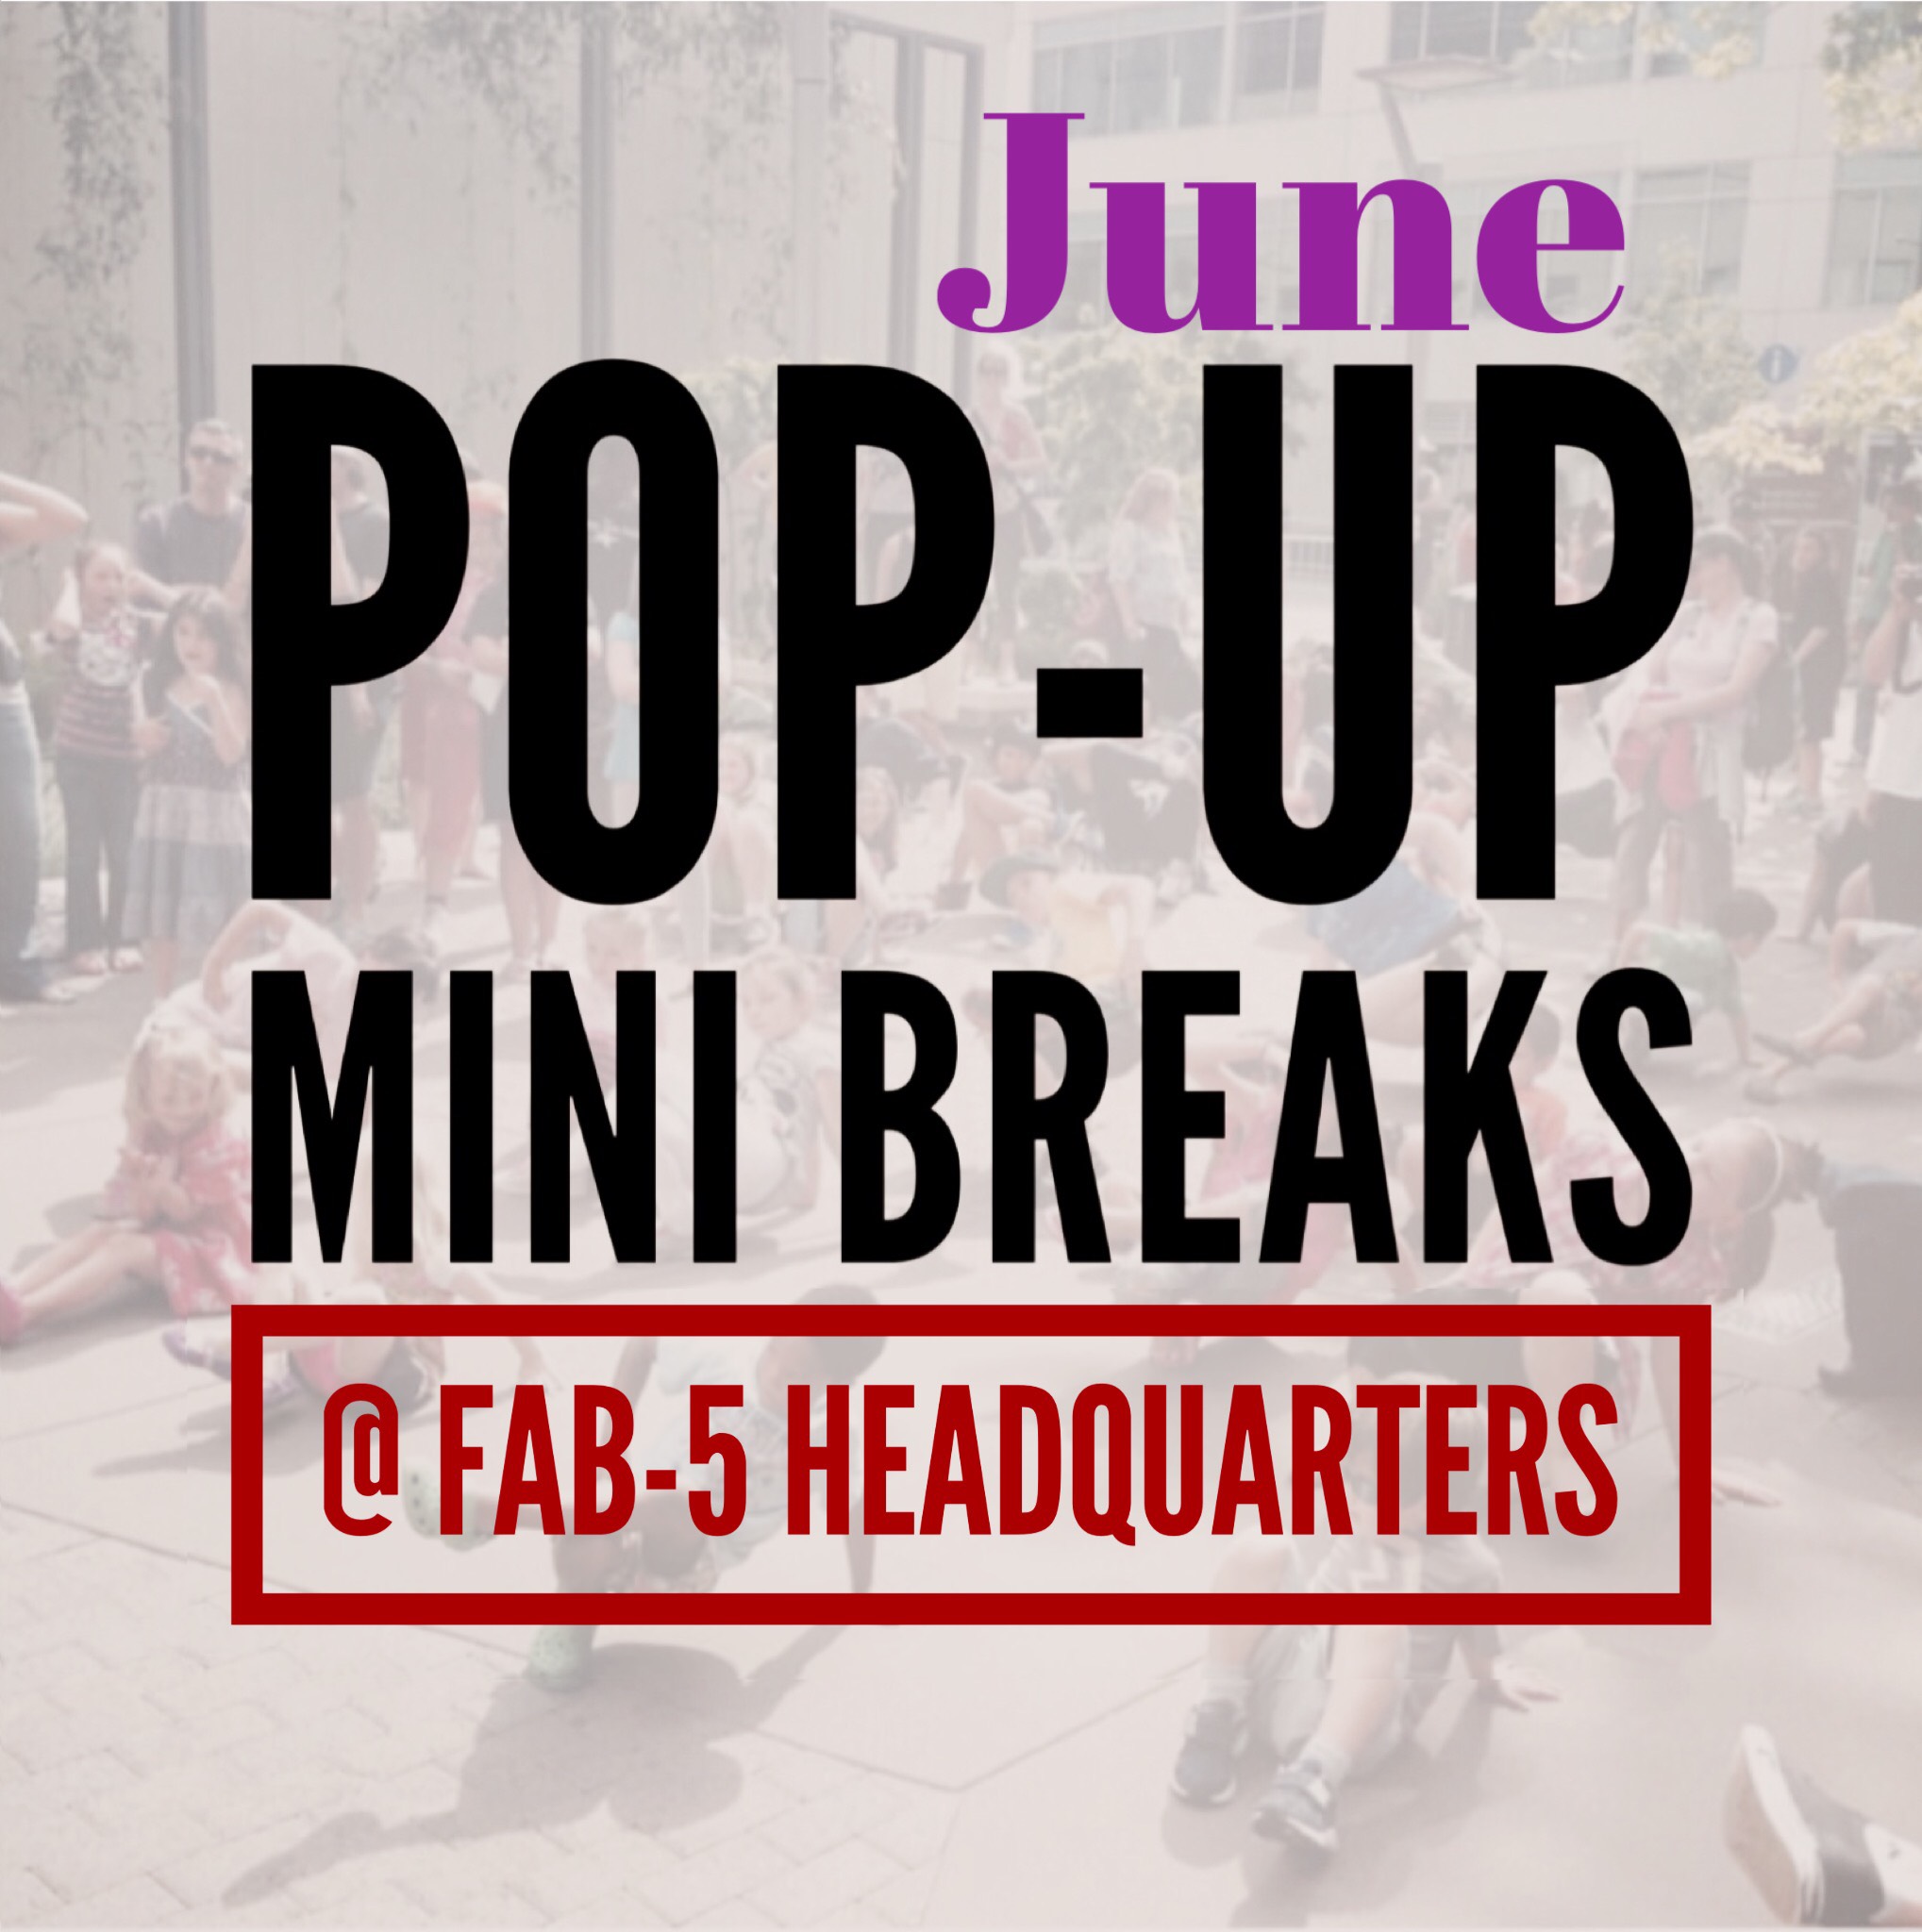 “Pop-up Mini BREAKS” @ Fab-5 HQ (Tacoma)